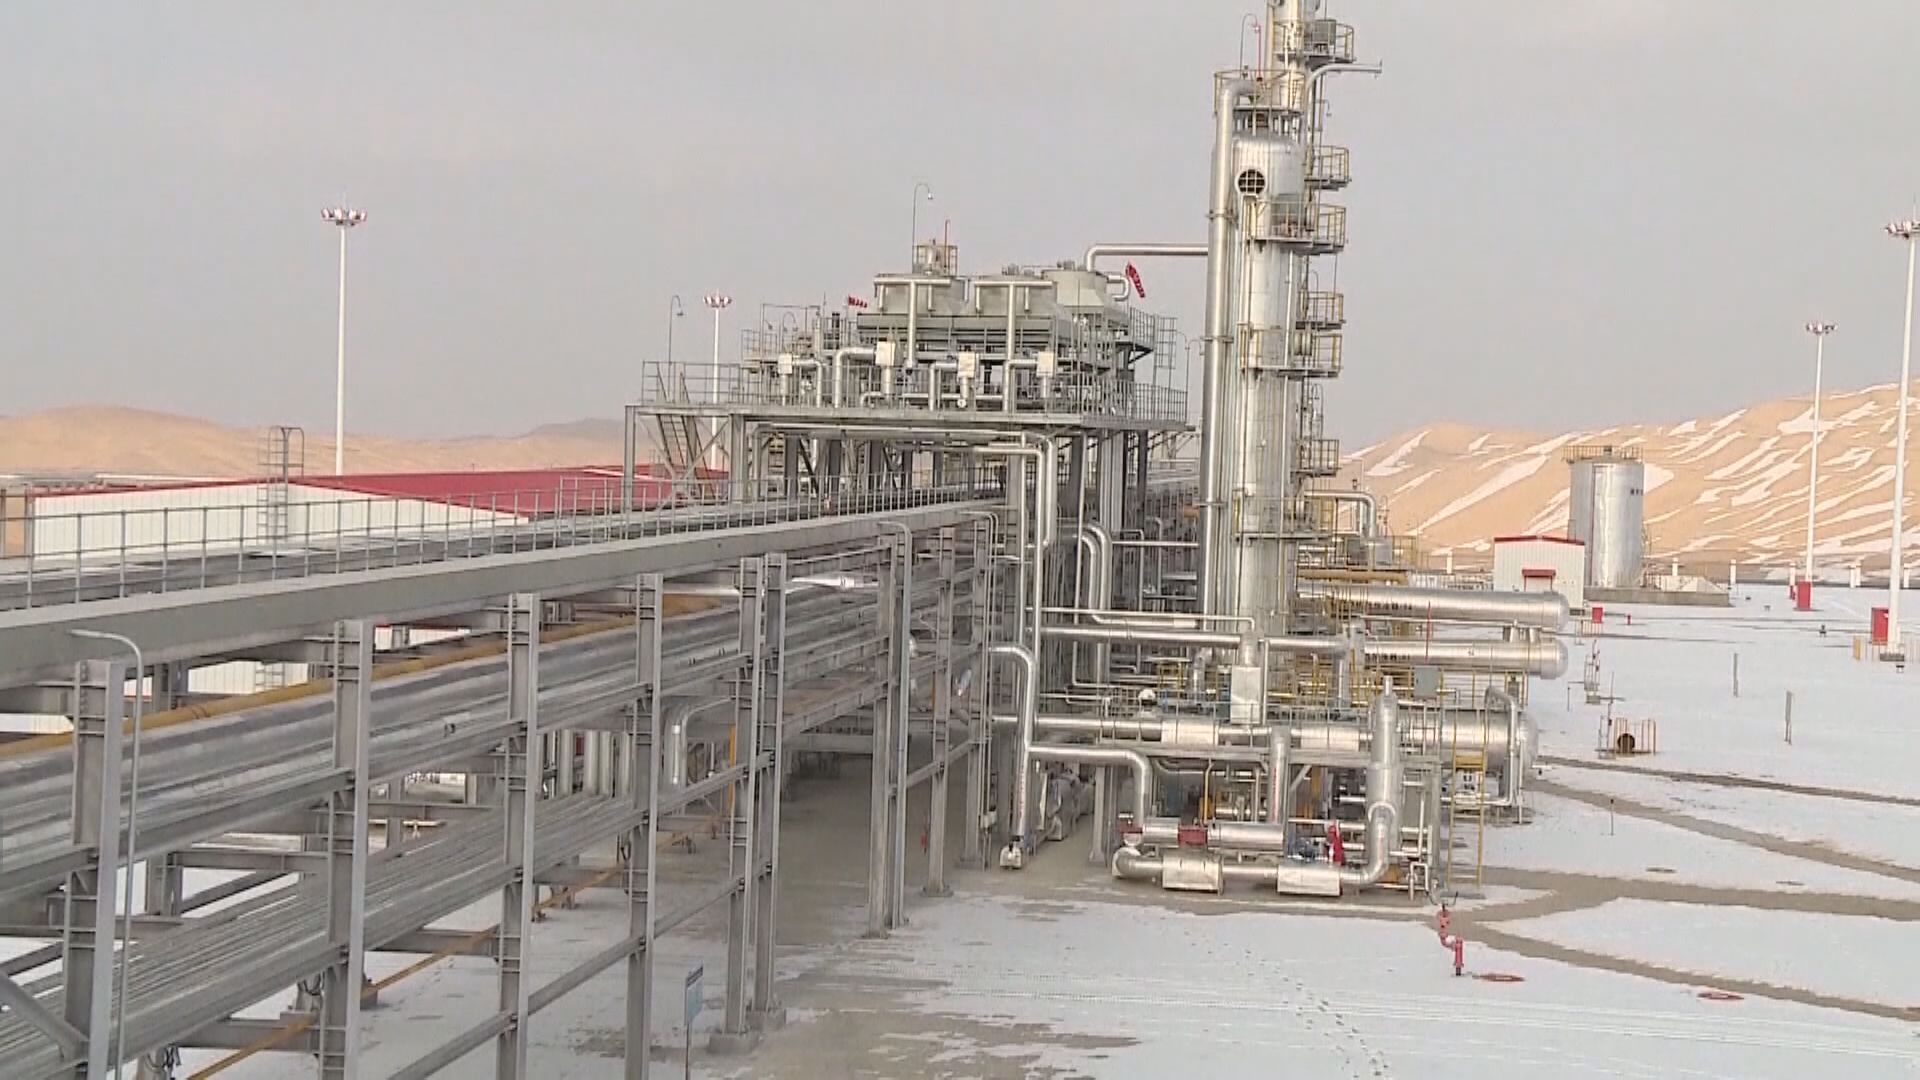 【石油供應】FT:倘俄產量受禁令影響 沙特準備增產